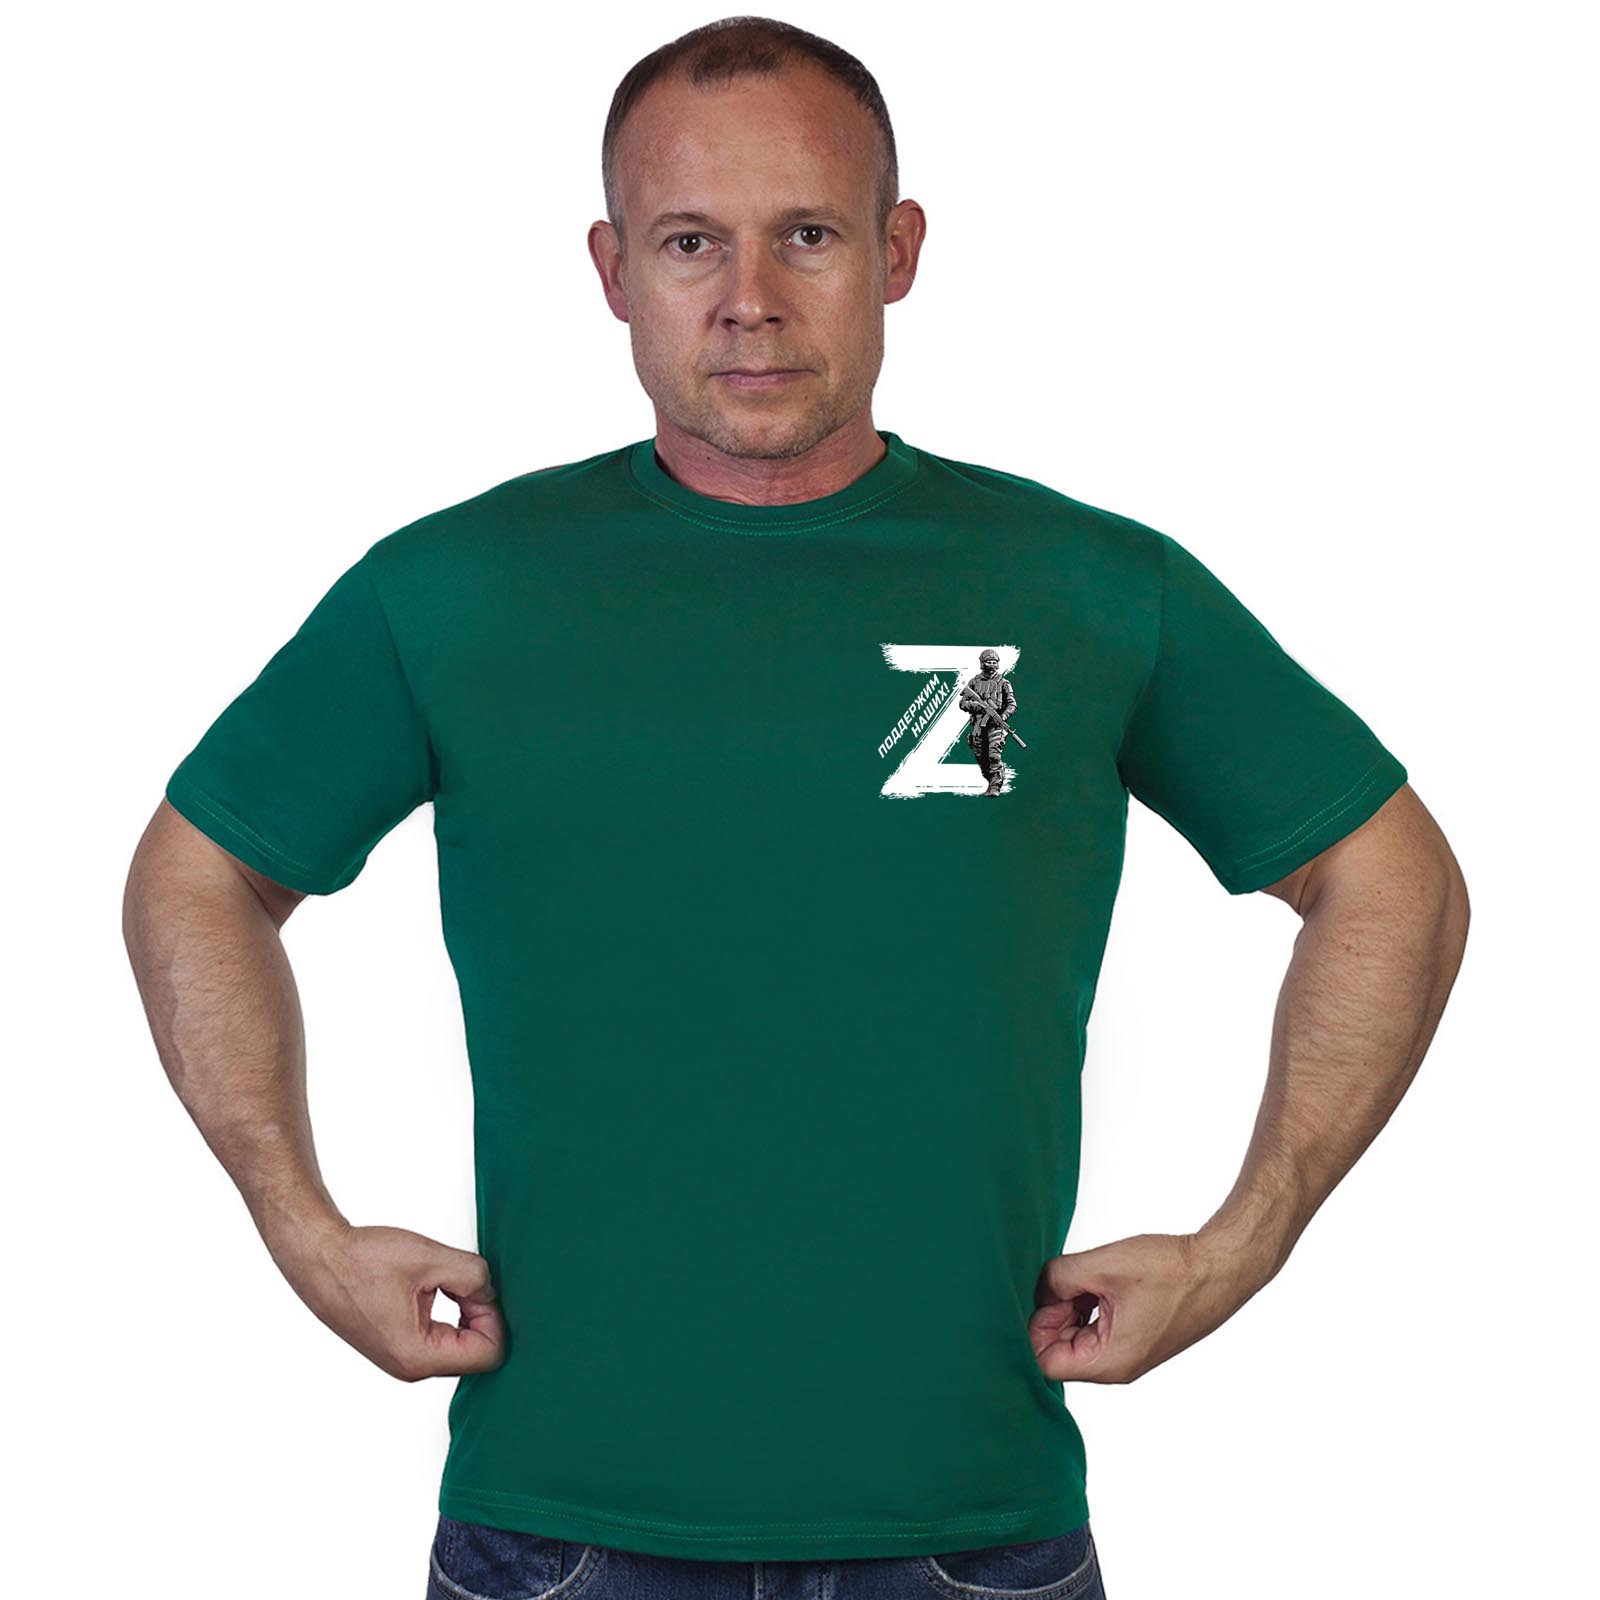 Купить в Москве футболку Z